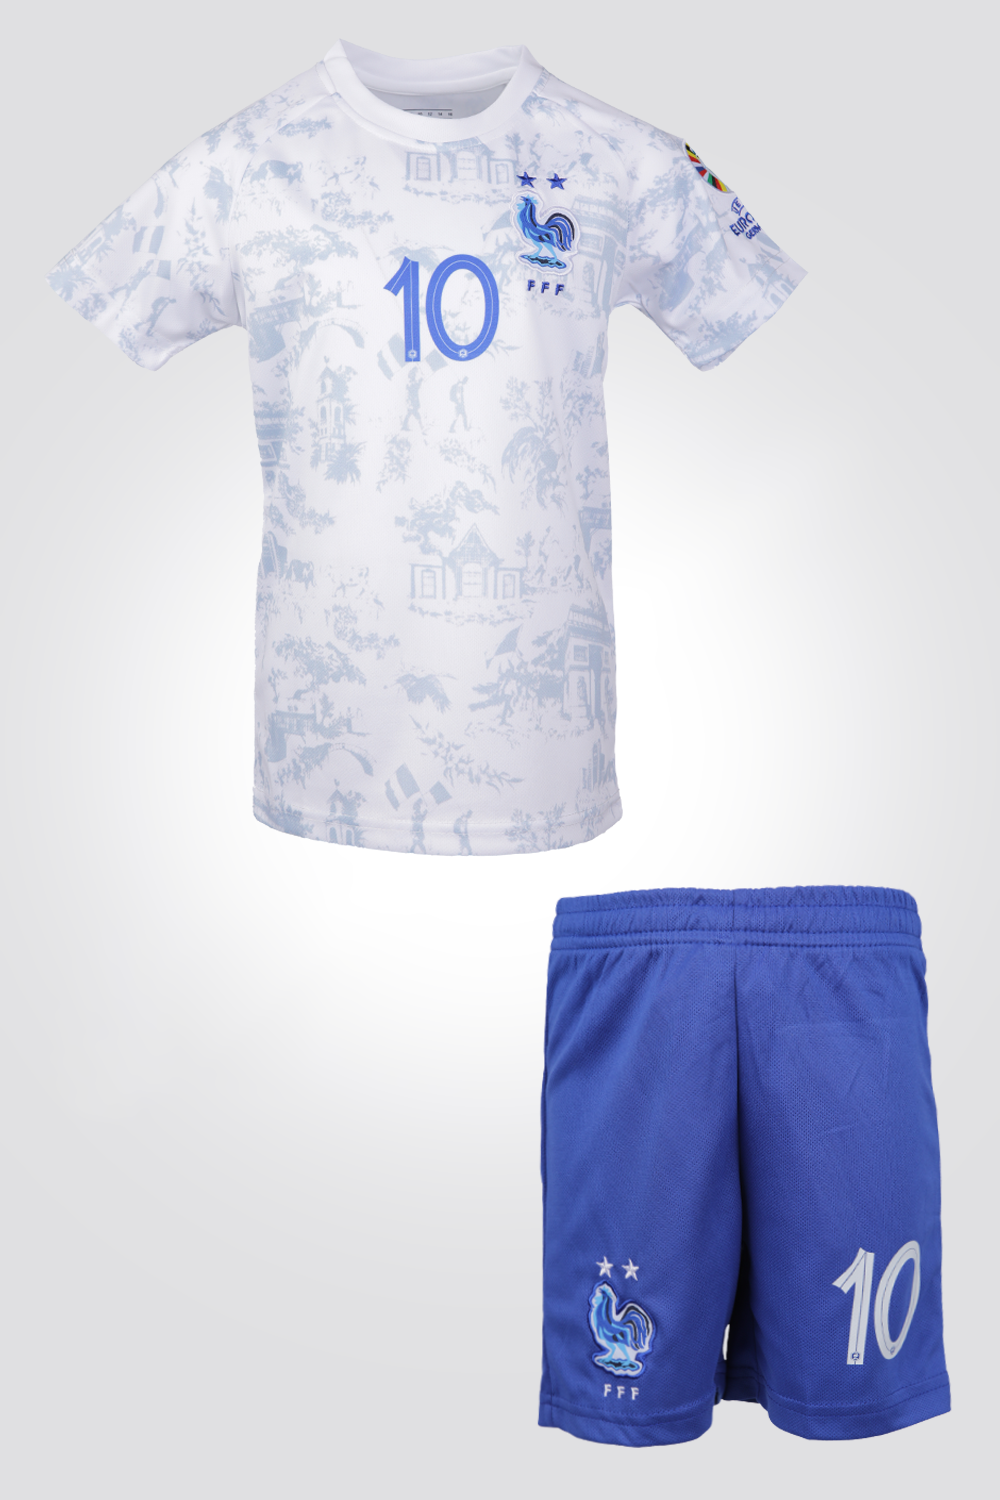 חליפת כדורגל איכותית לילדים הסט כולל חולצה נוחה וספורטיבית ומכנסים קצרים (חליפת כדורגל זו אינה מוצר מקורי או רשמי של מועדון ספורט כלשהו)  **התמונות להמחשבה בלבד  (18) XXS (6) – XS (8) – S (10) – M (12) – L (14) – XL (16) – XXL.